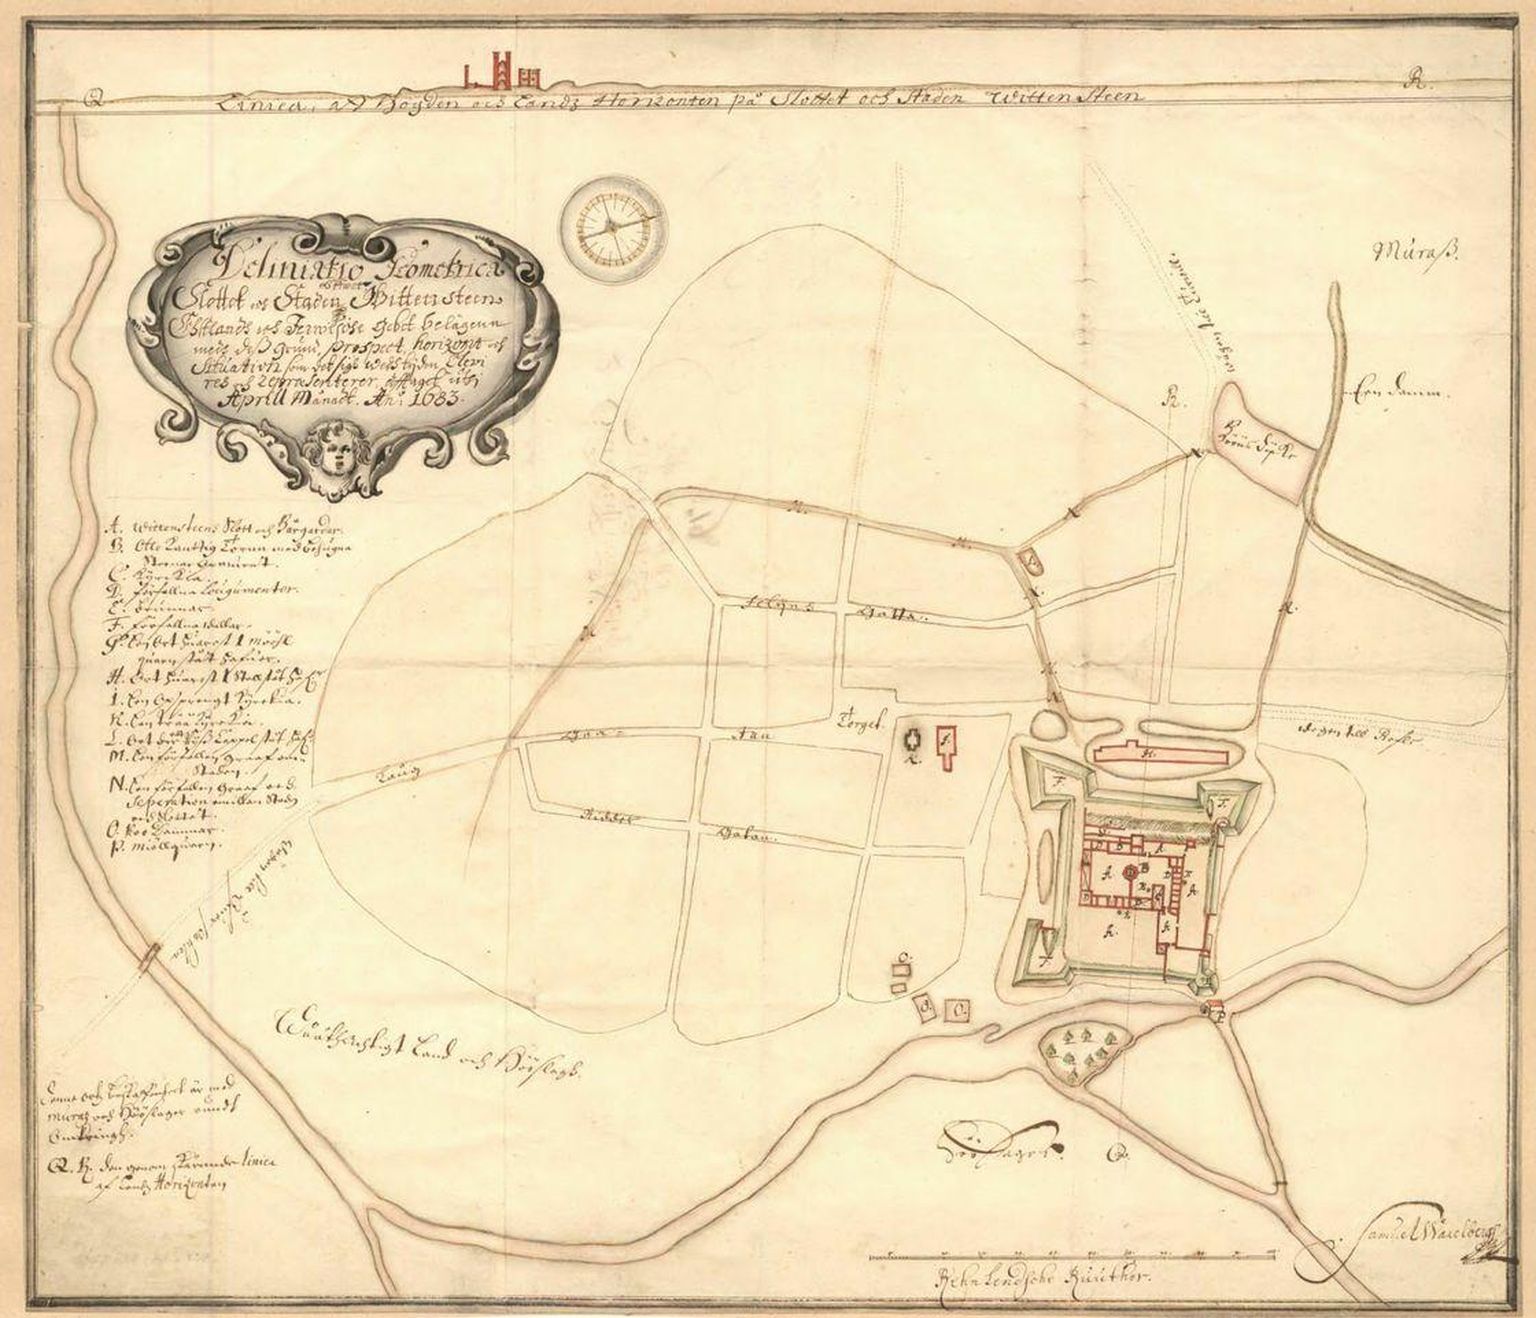 Paide linn 1683. aasta S. Waxelbergi kaardil. Rahvusarhiivis hoiul olevalt kaardilt on näha linnust ja vallikraavi, lisaks linna tänavate võrgustikku, mis on suuresti säilinud tänapäevani.